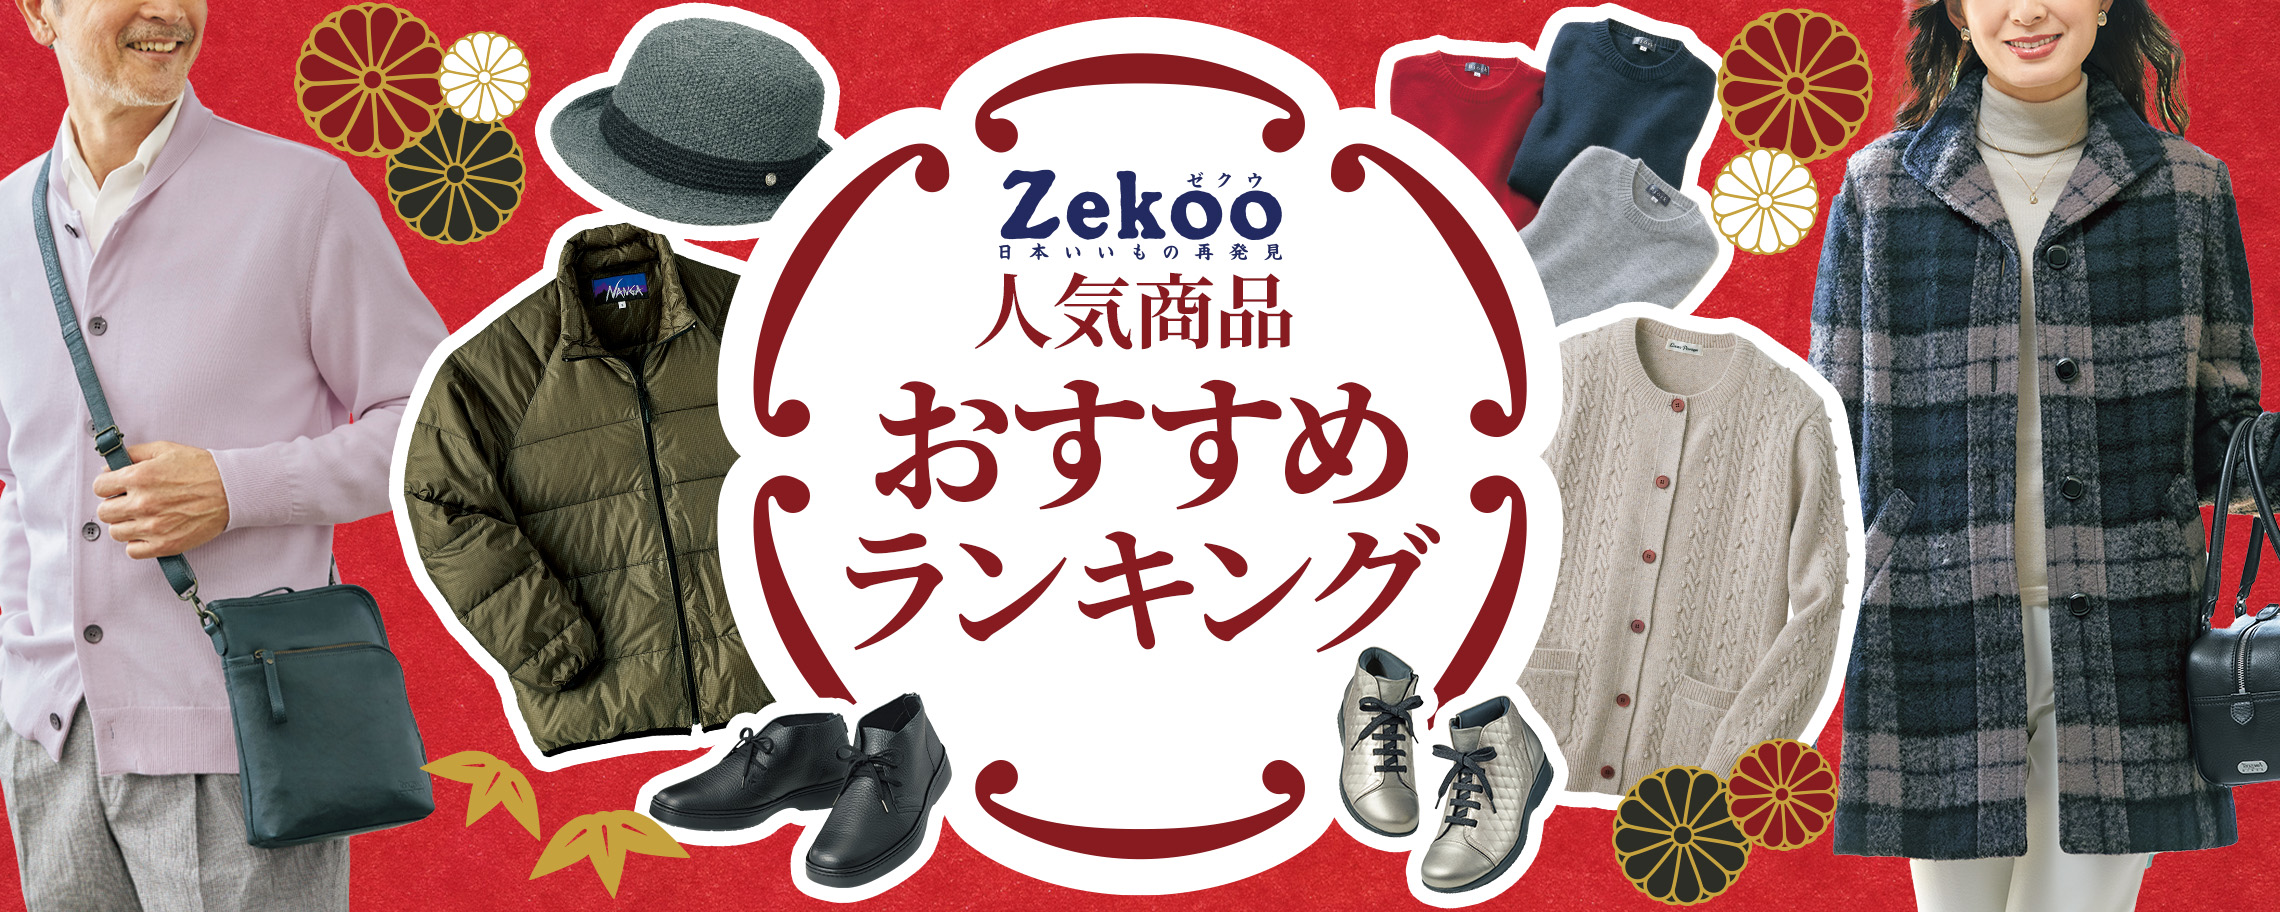 Zekoo 人気商品おすすめランキング